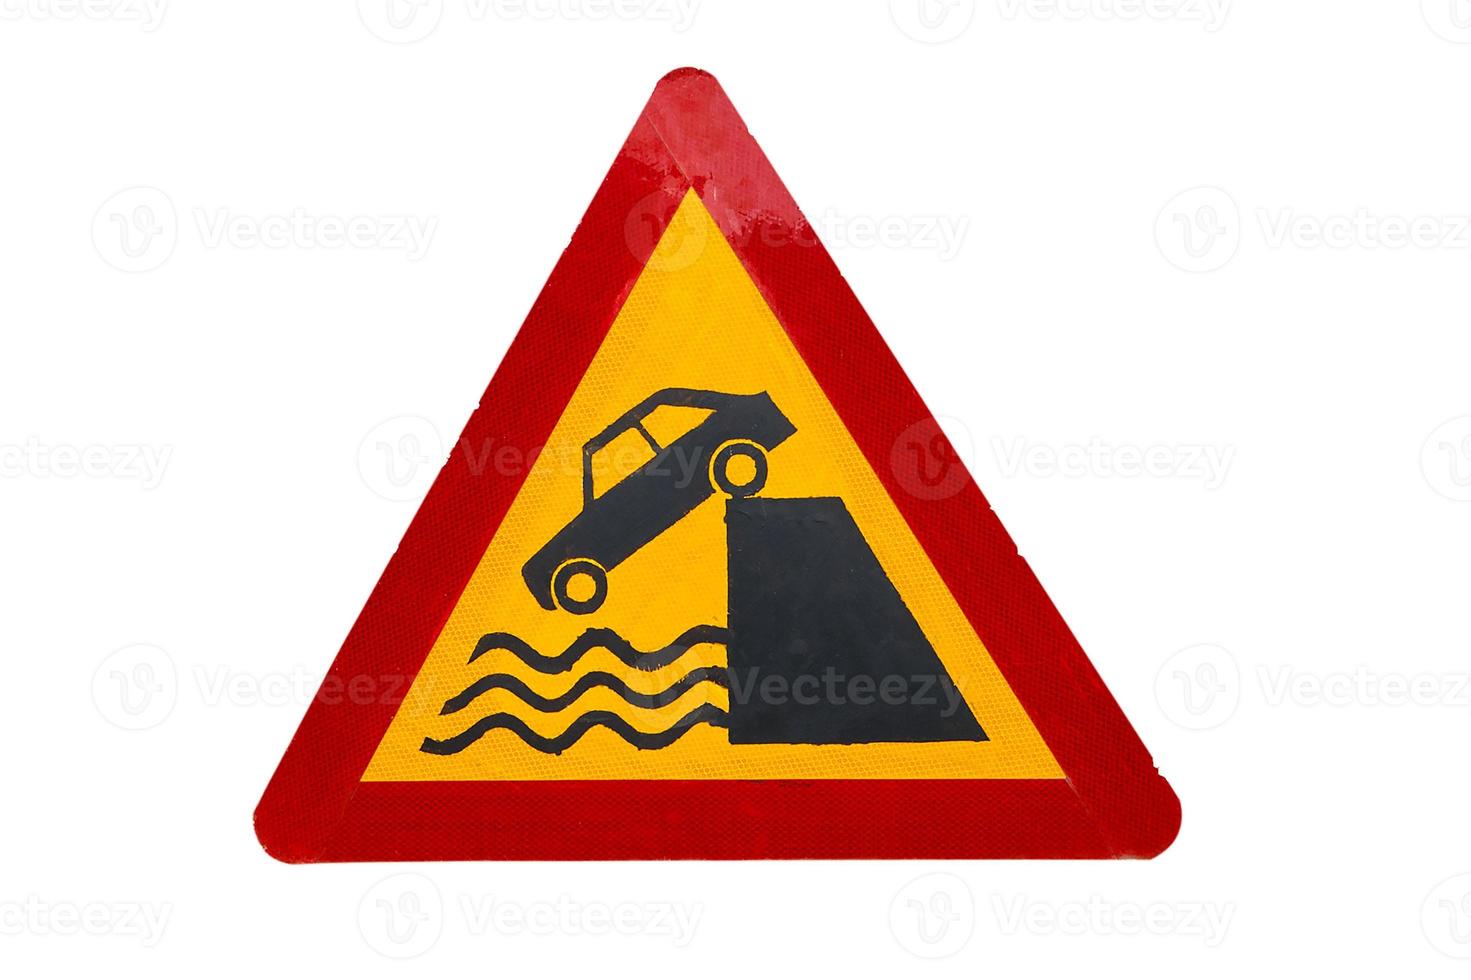 väg tecken avresa till kaj, väg tecken indikerar den där de bil kan falla in i de flod foto